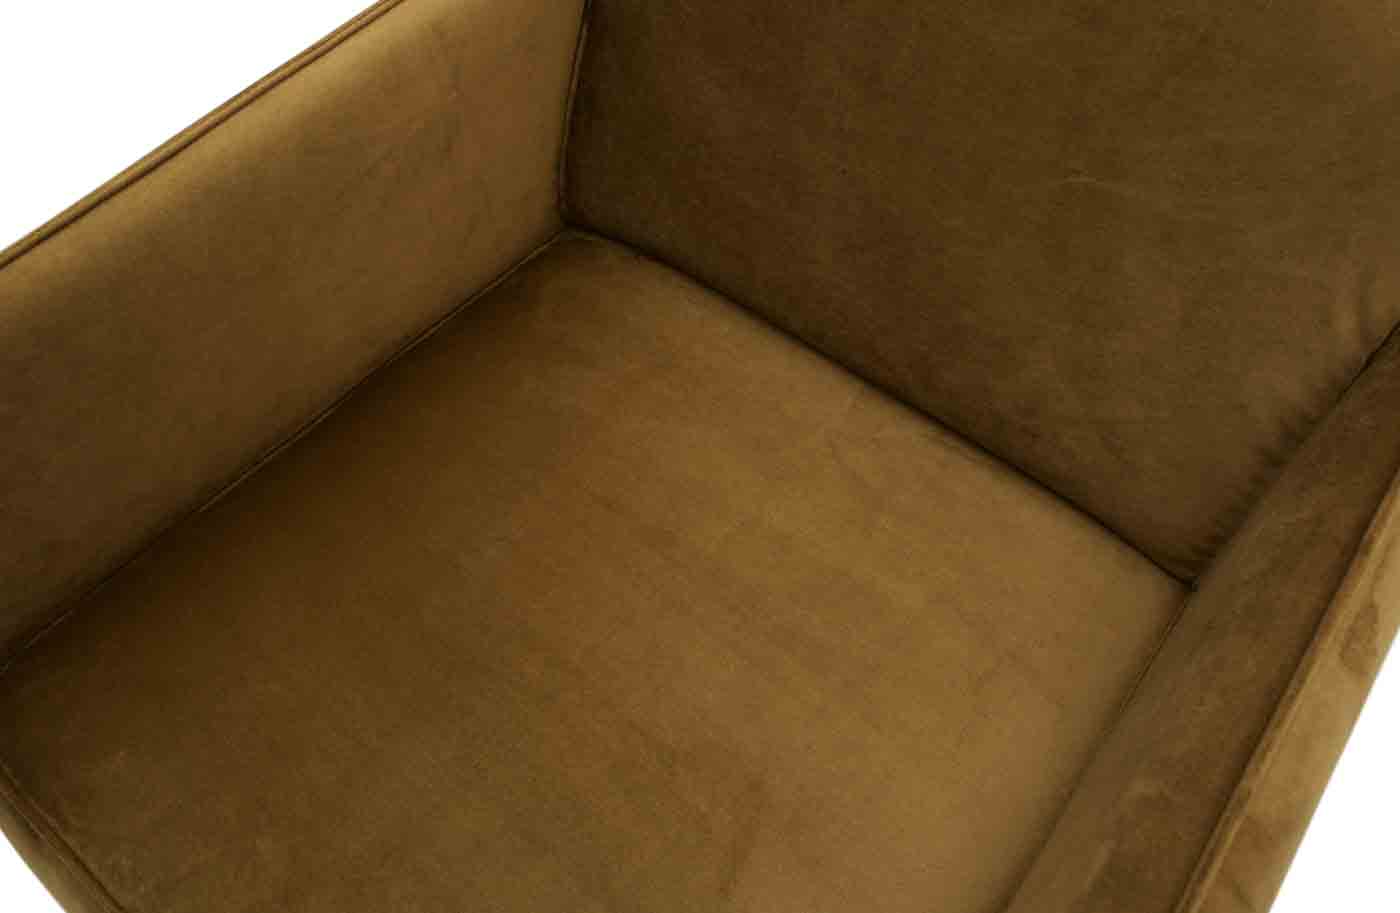 Sessel Statement mit Samt in einem zeitlosen Design. Hochwertige Verarbeitung und angenehmer Sitzkomfort durch die Federkernpolsterung